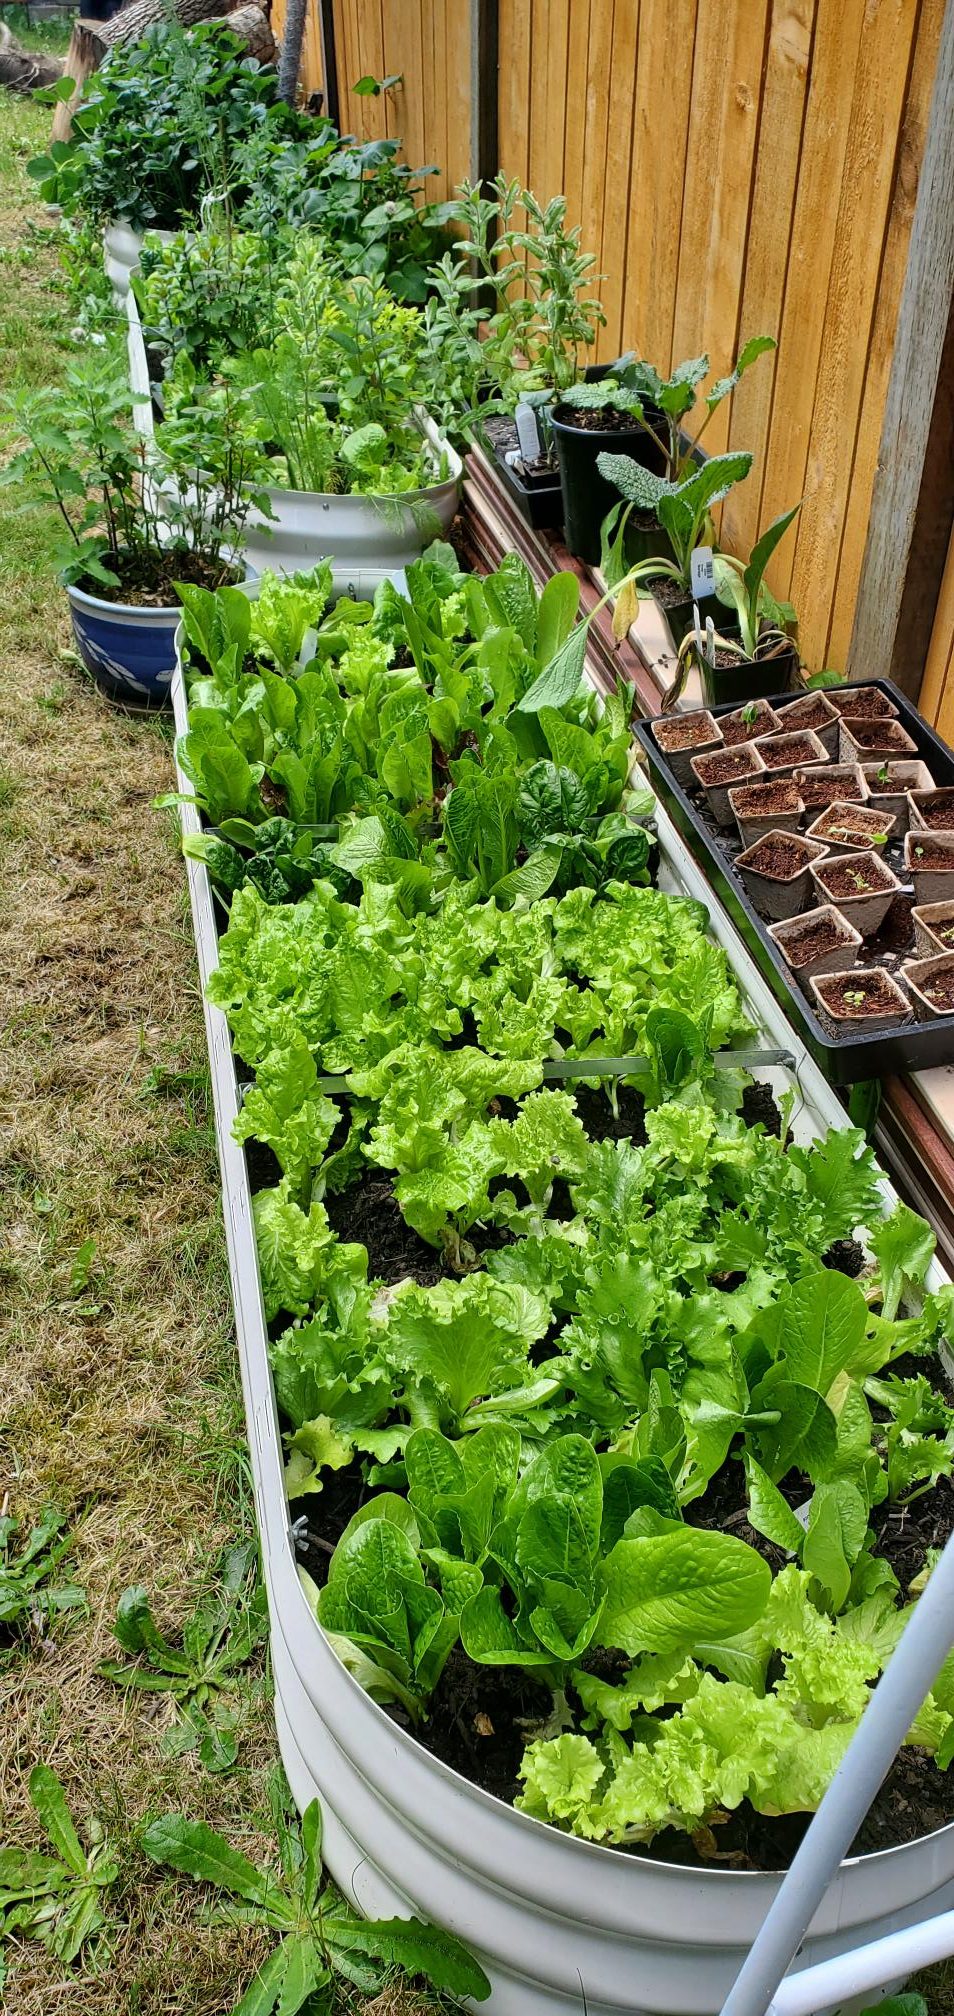 Lettuce plants in our backyard homestead garden.